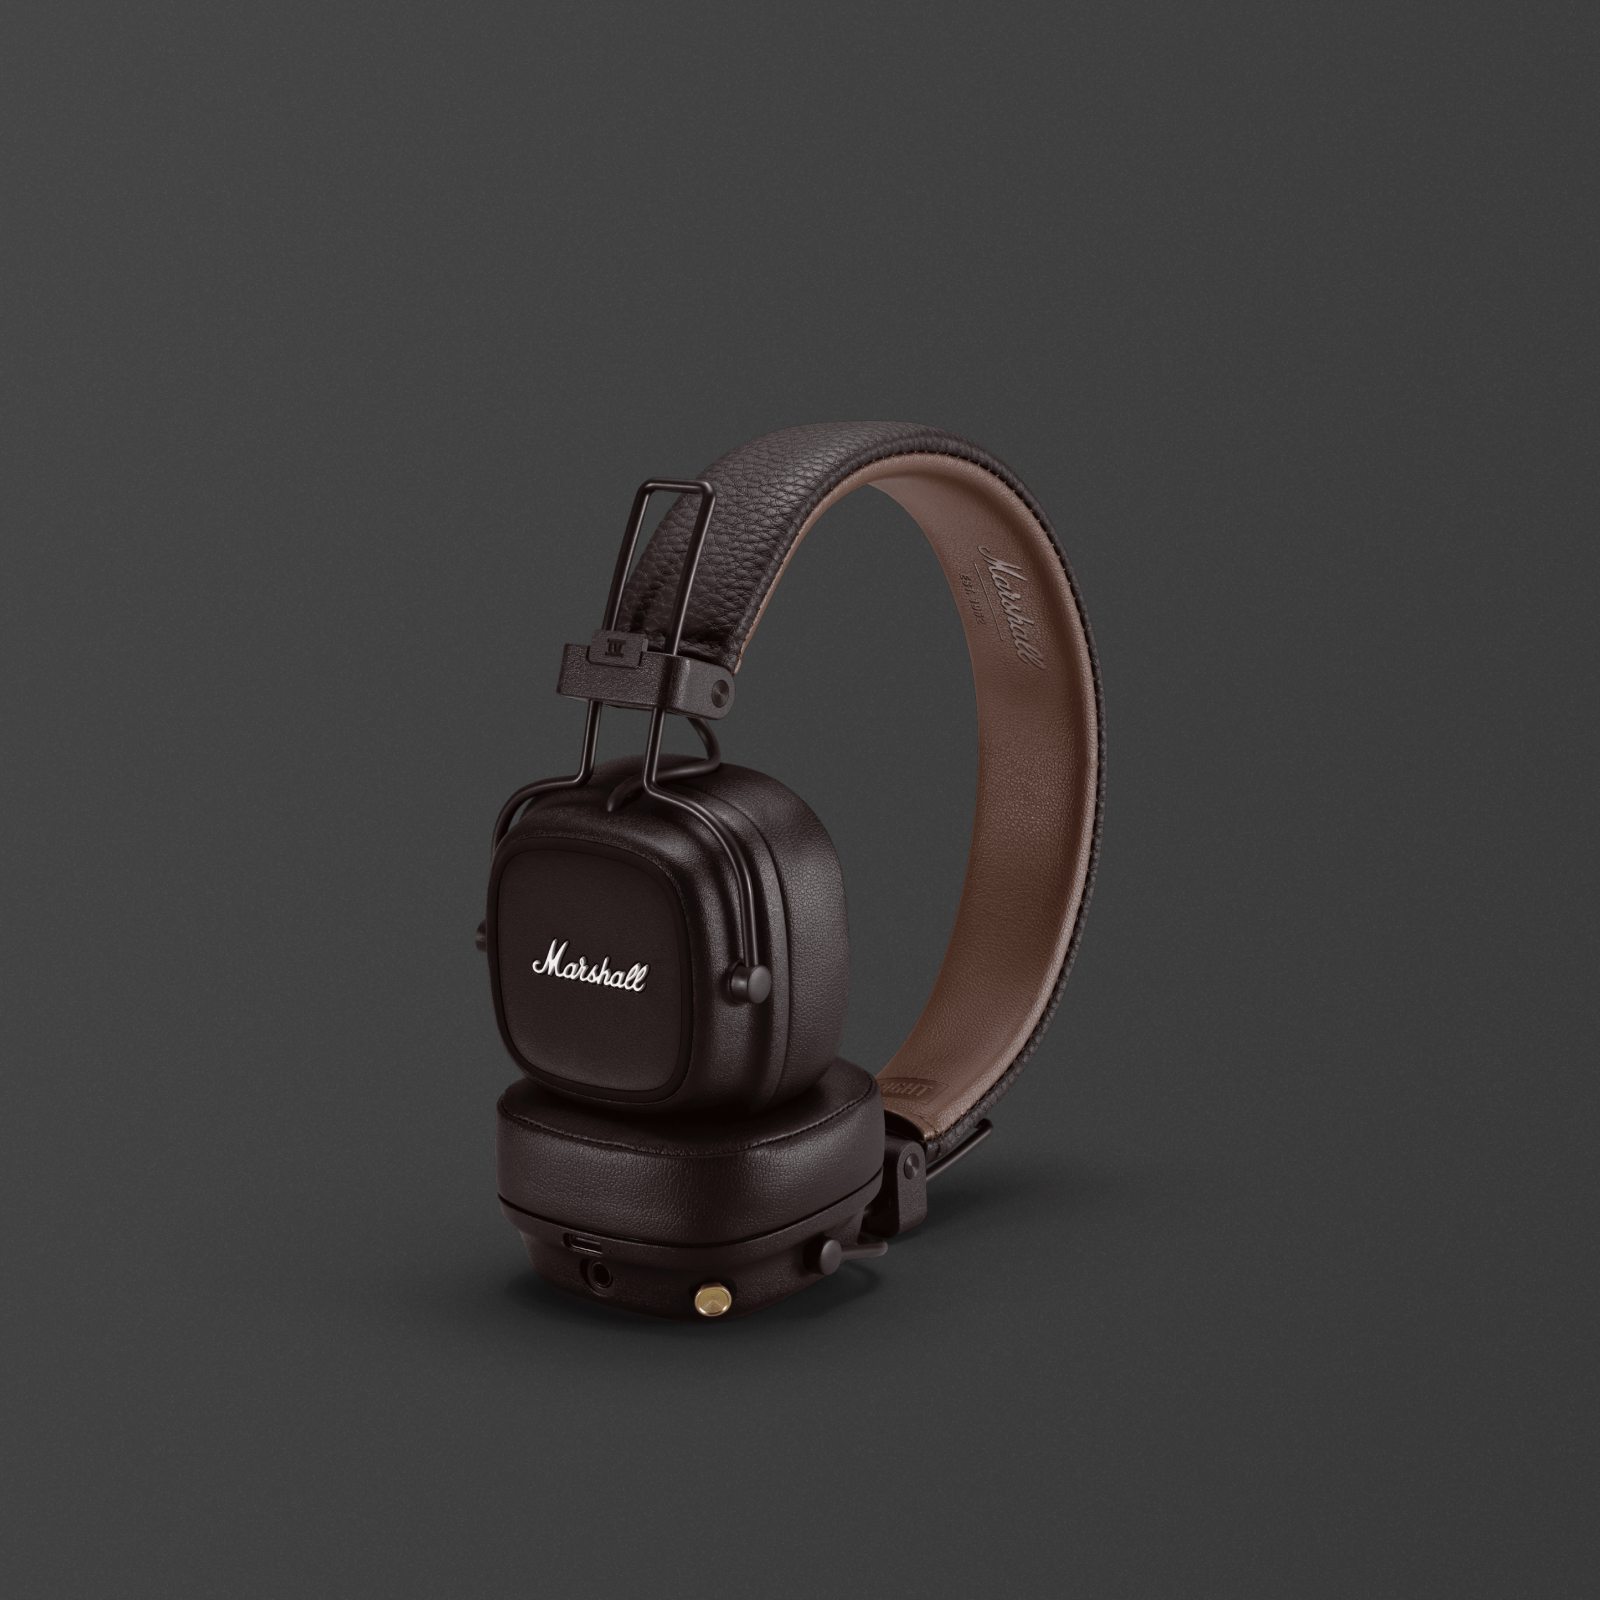 On-ear headphones for an epic audio journey | Marshall.com